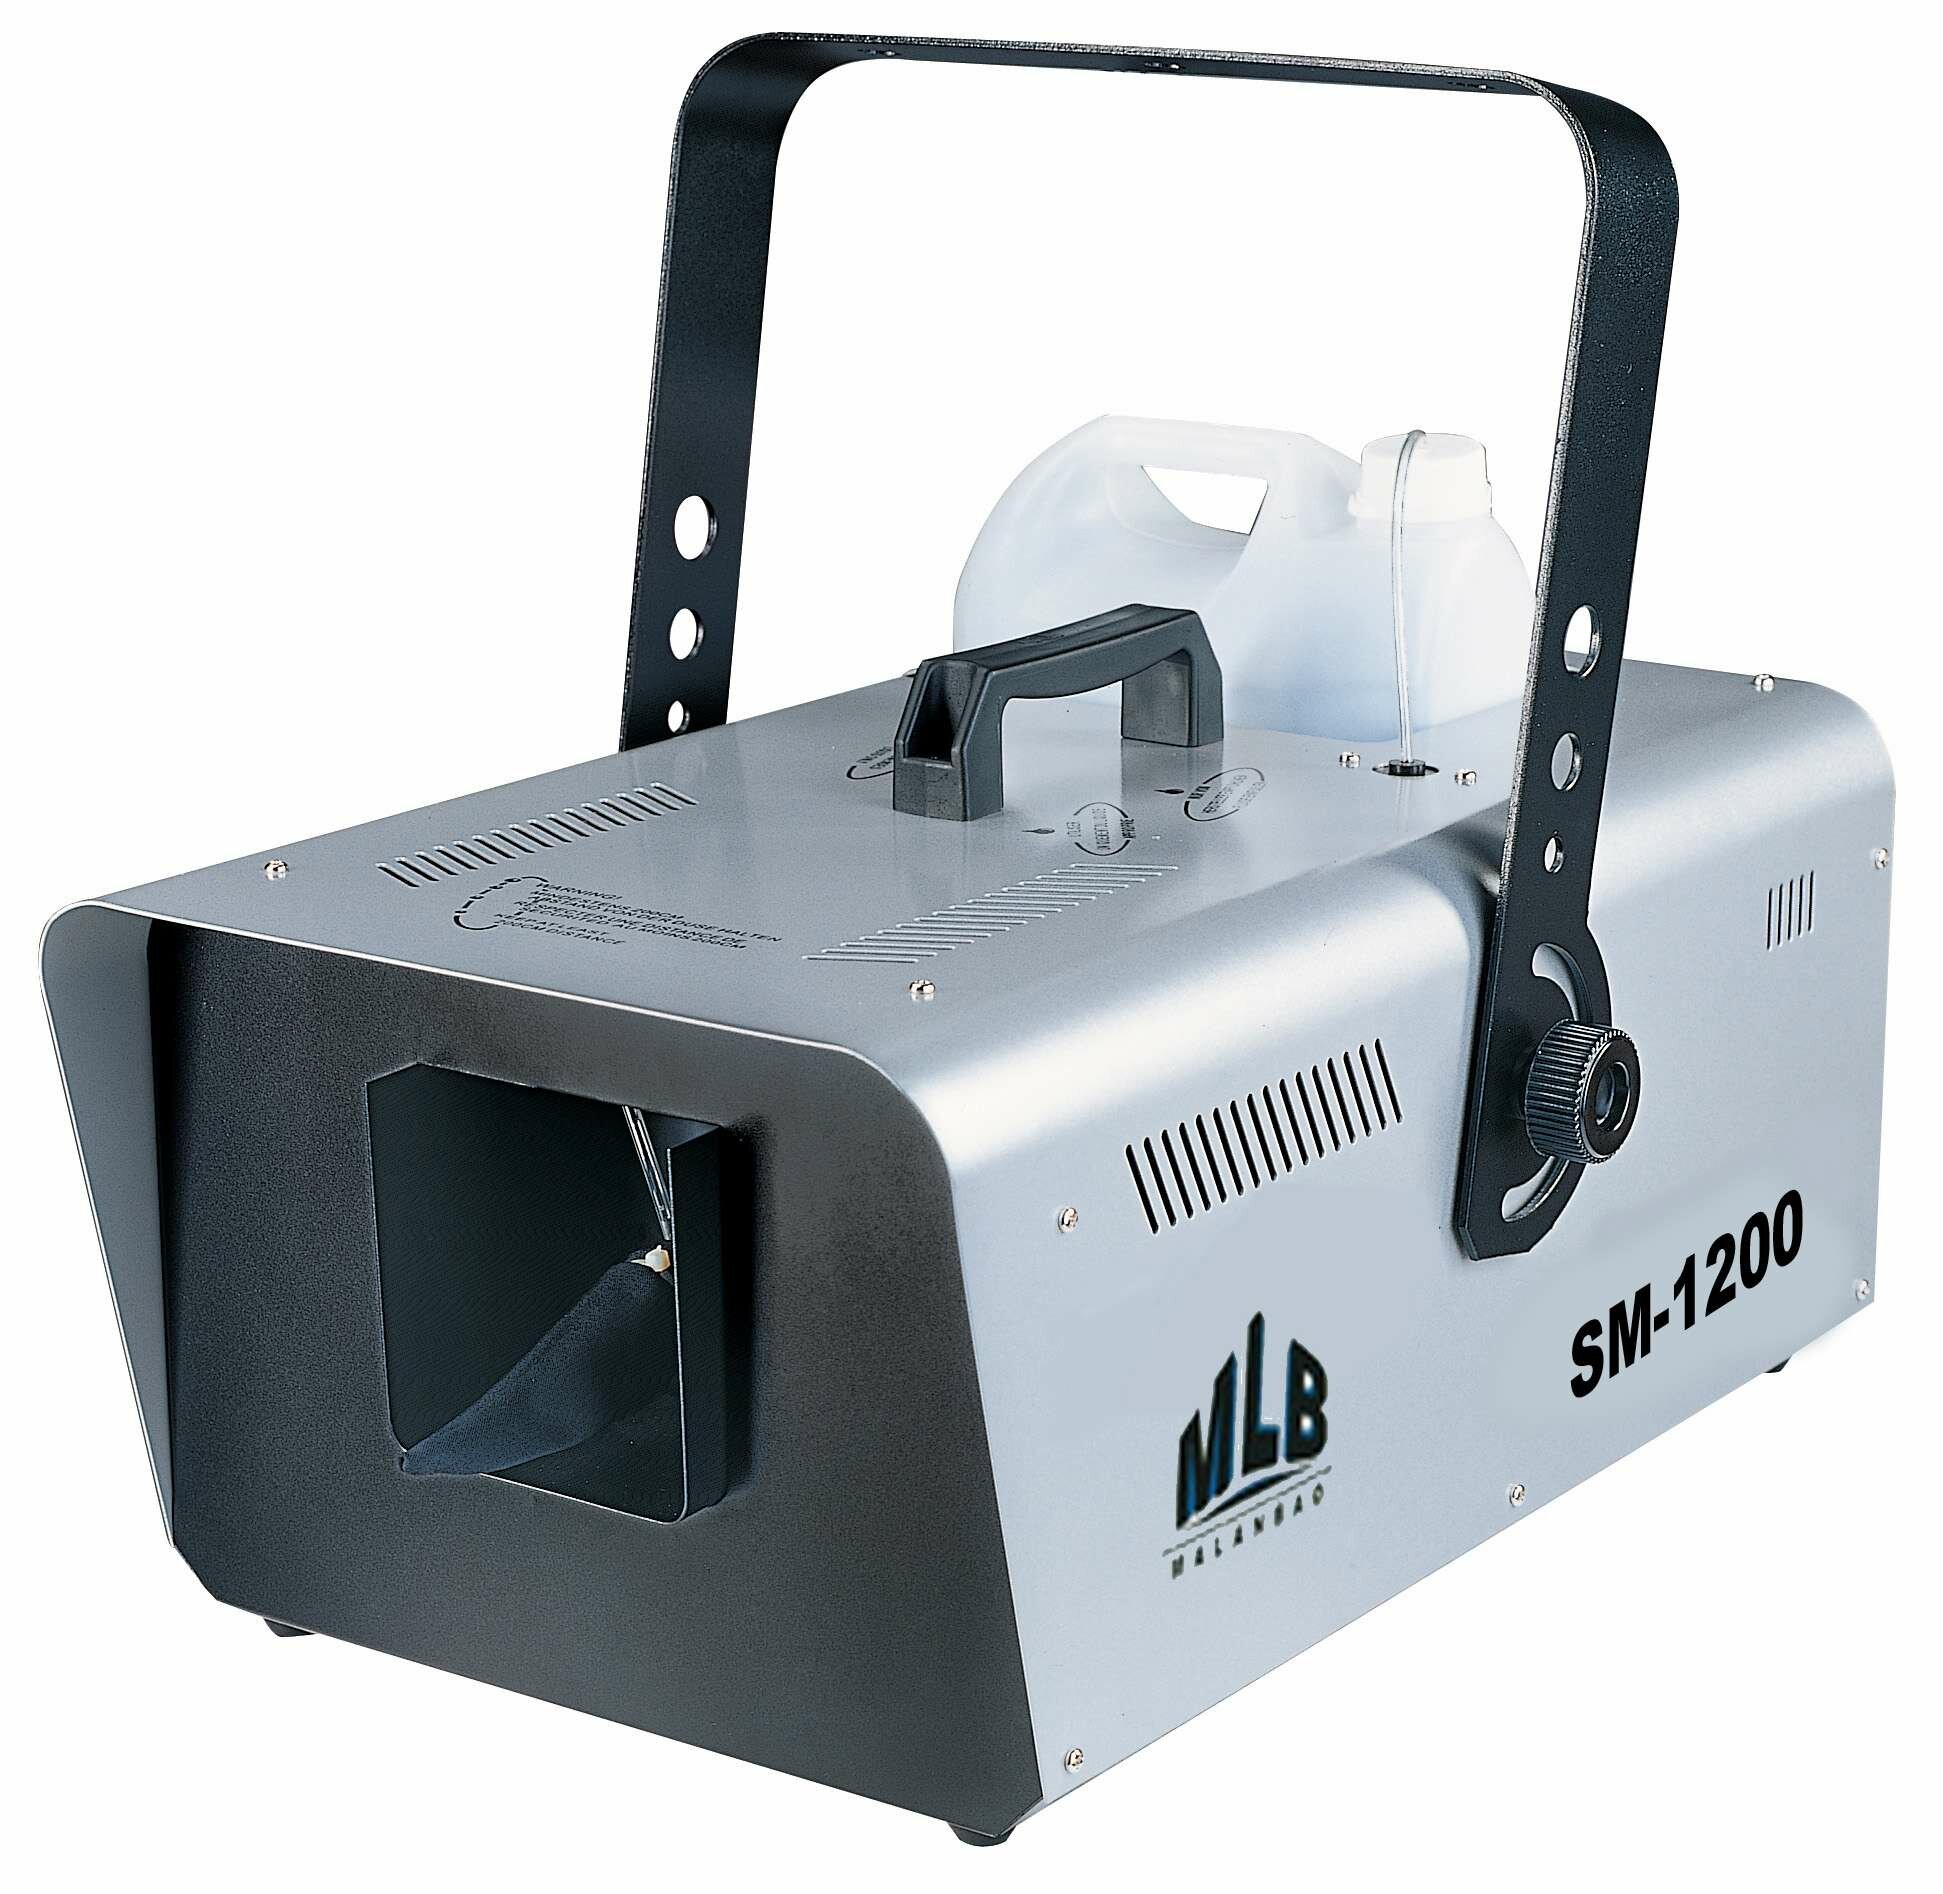 MLB SM-1200 Генератор снега, 5л емкость для жидкости, 1200Вт, управление: DMX-512, проводной ПДУ с регулировкой уровня производительности, беспроводной ПДУ, производительность: 60 куб. м, уровень шума: 60Дб/1м, 9,8 кг.